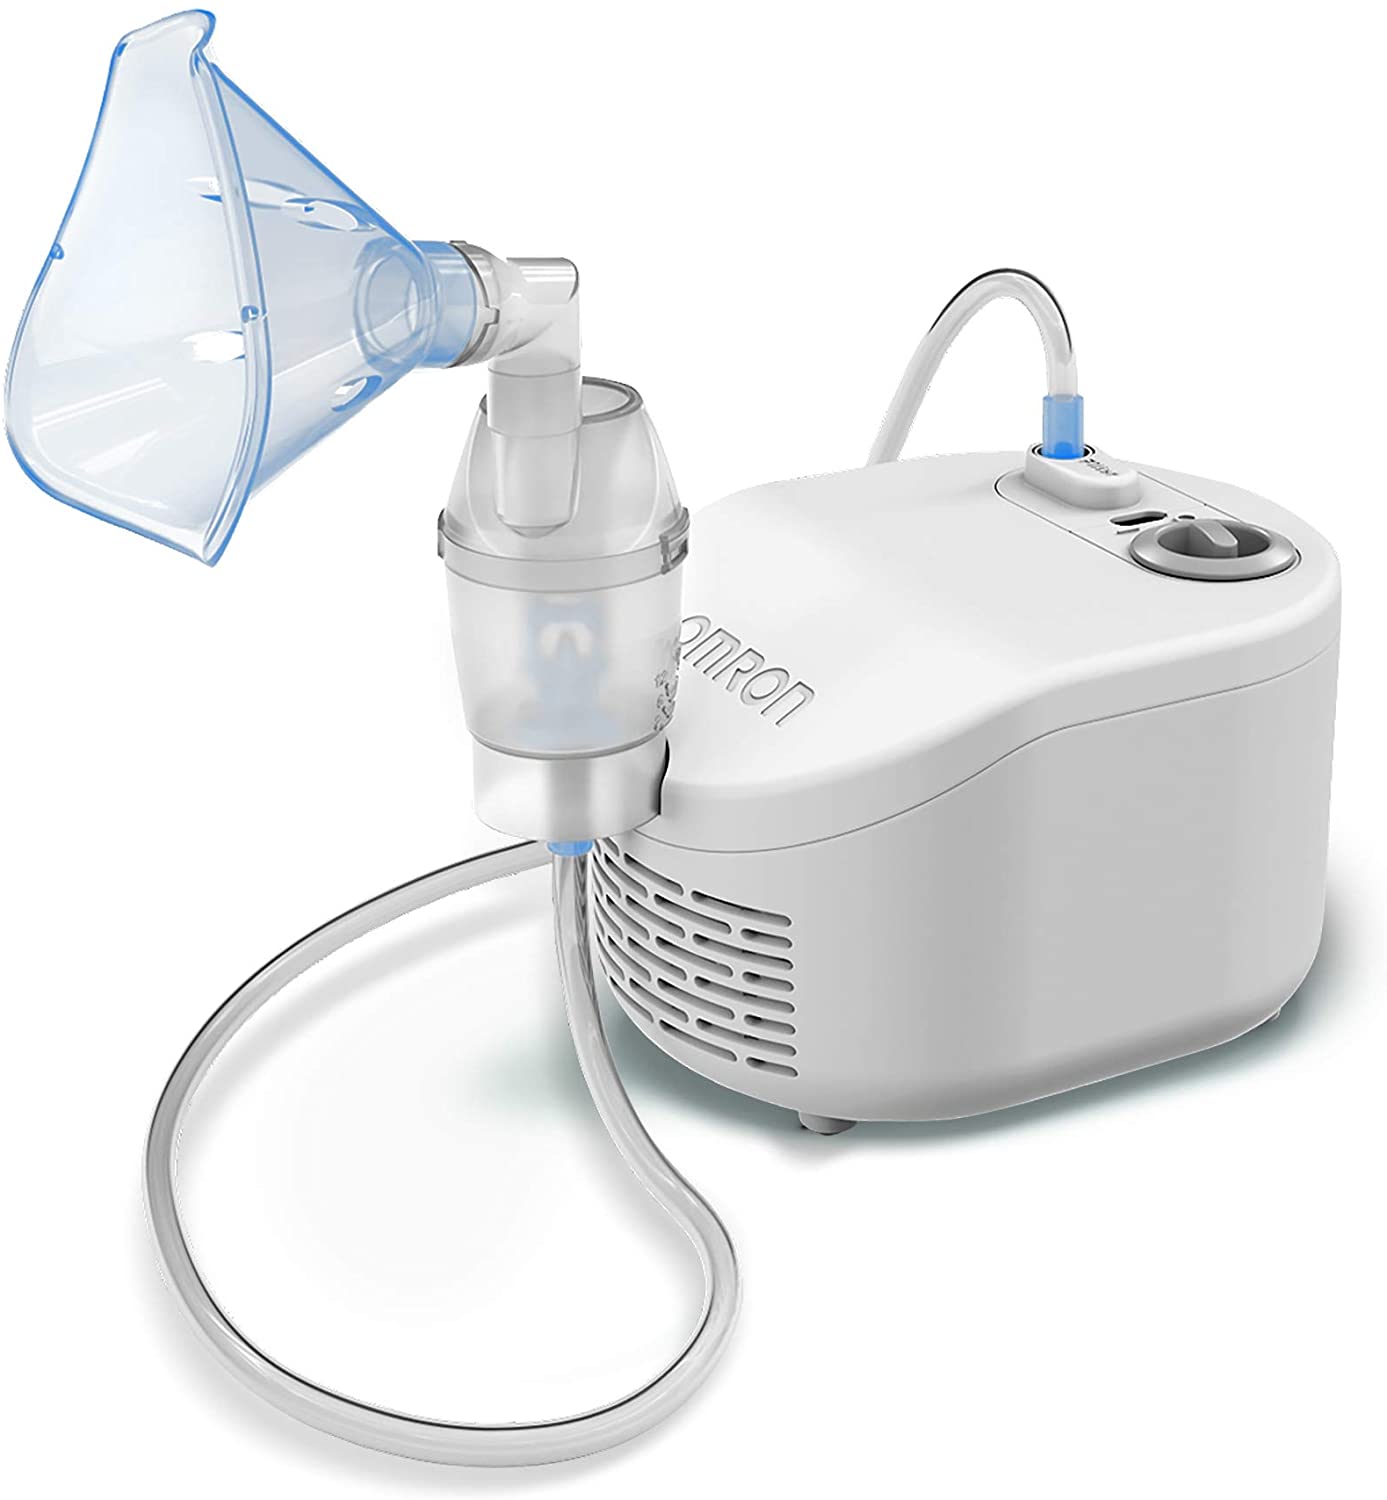 Nebulizadores para adultos - Potencia y eficacia en terapias respiratorias